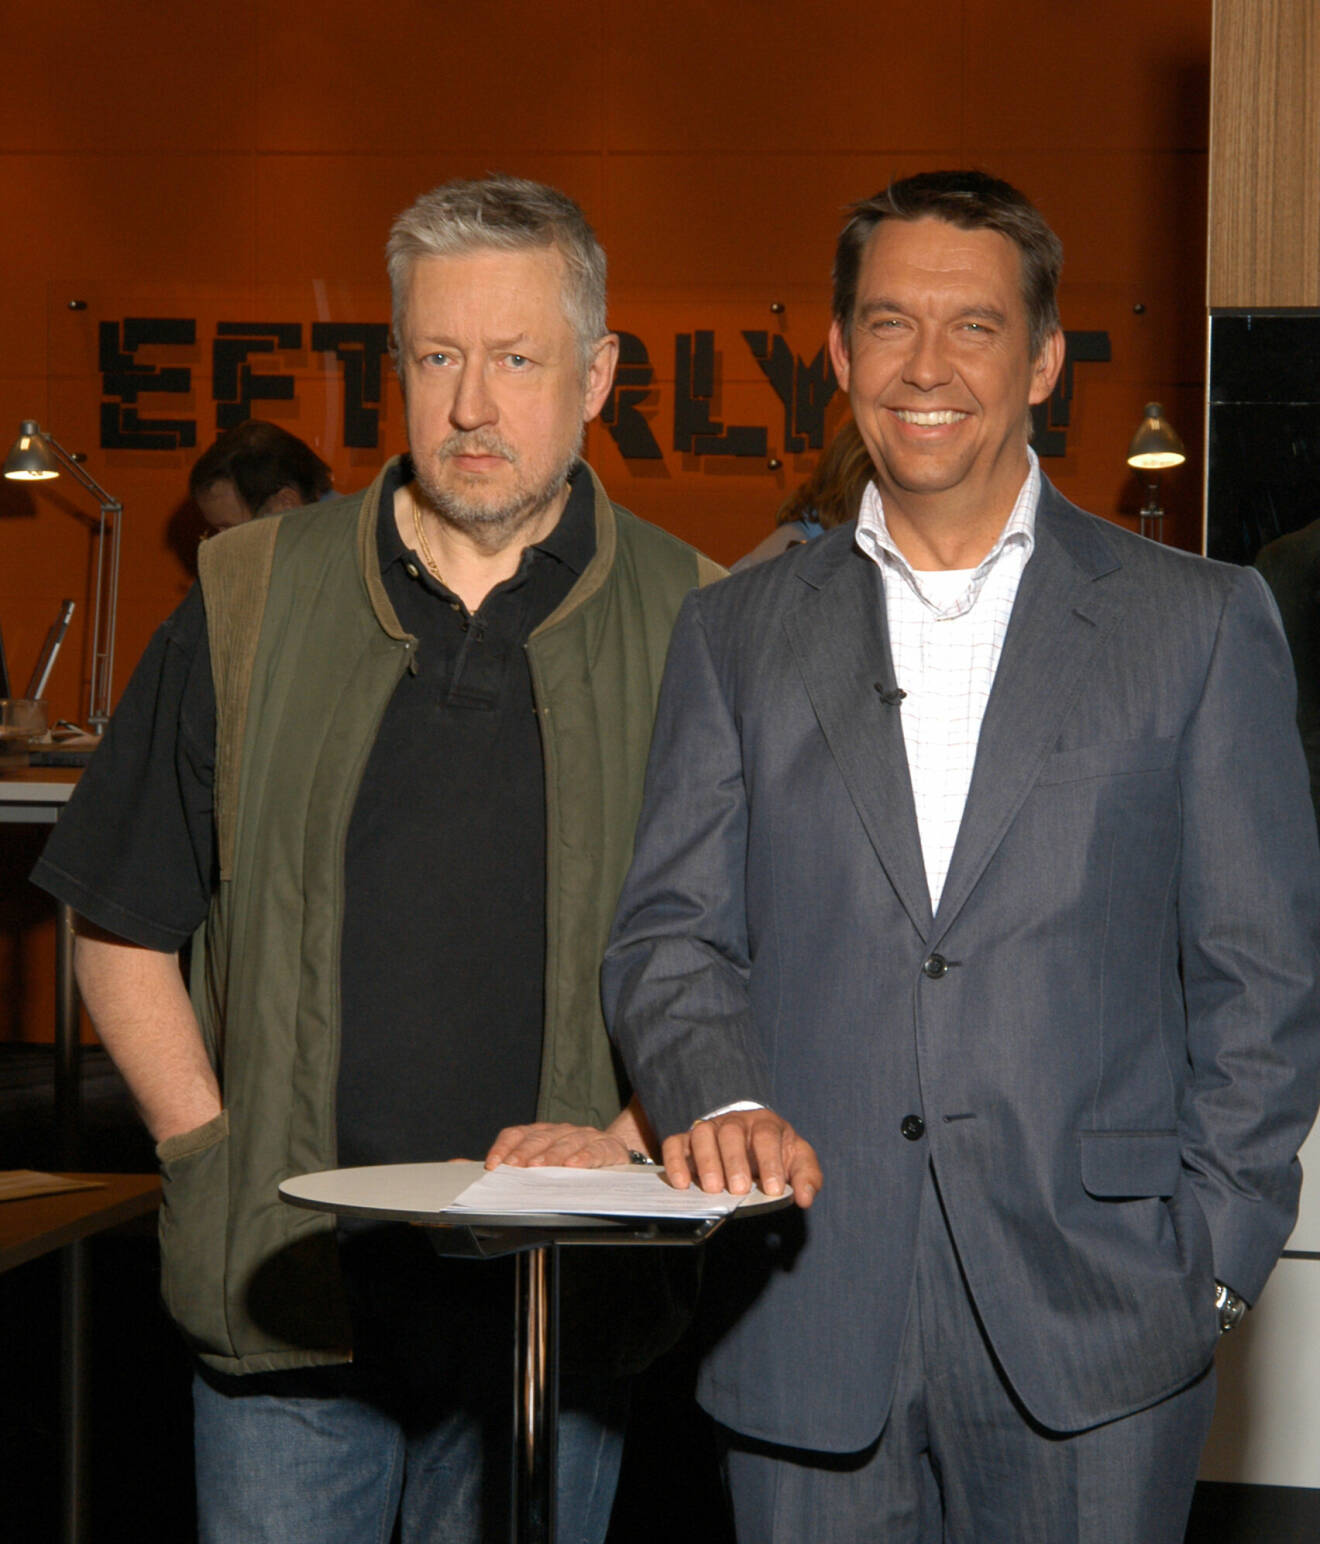 Leif GW Perssons karriär som kriminologiexpert i tv sträcker sig två decennier bakåt i tiden till TV4-programmet Efterlysts start år 1998. Här syns han tillsammans med programledaren Hasse Aro år 2002.